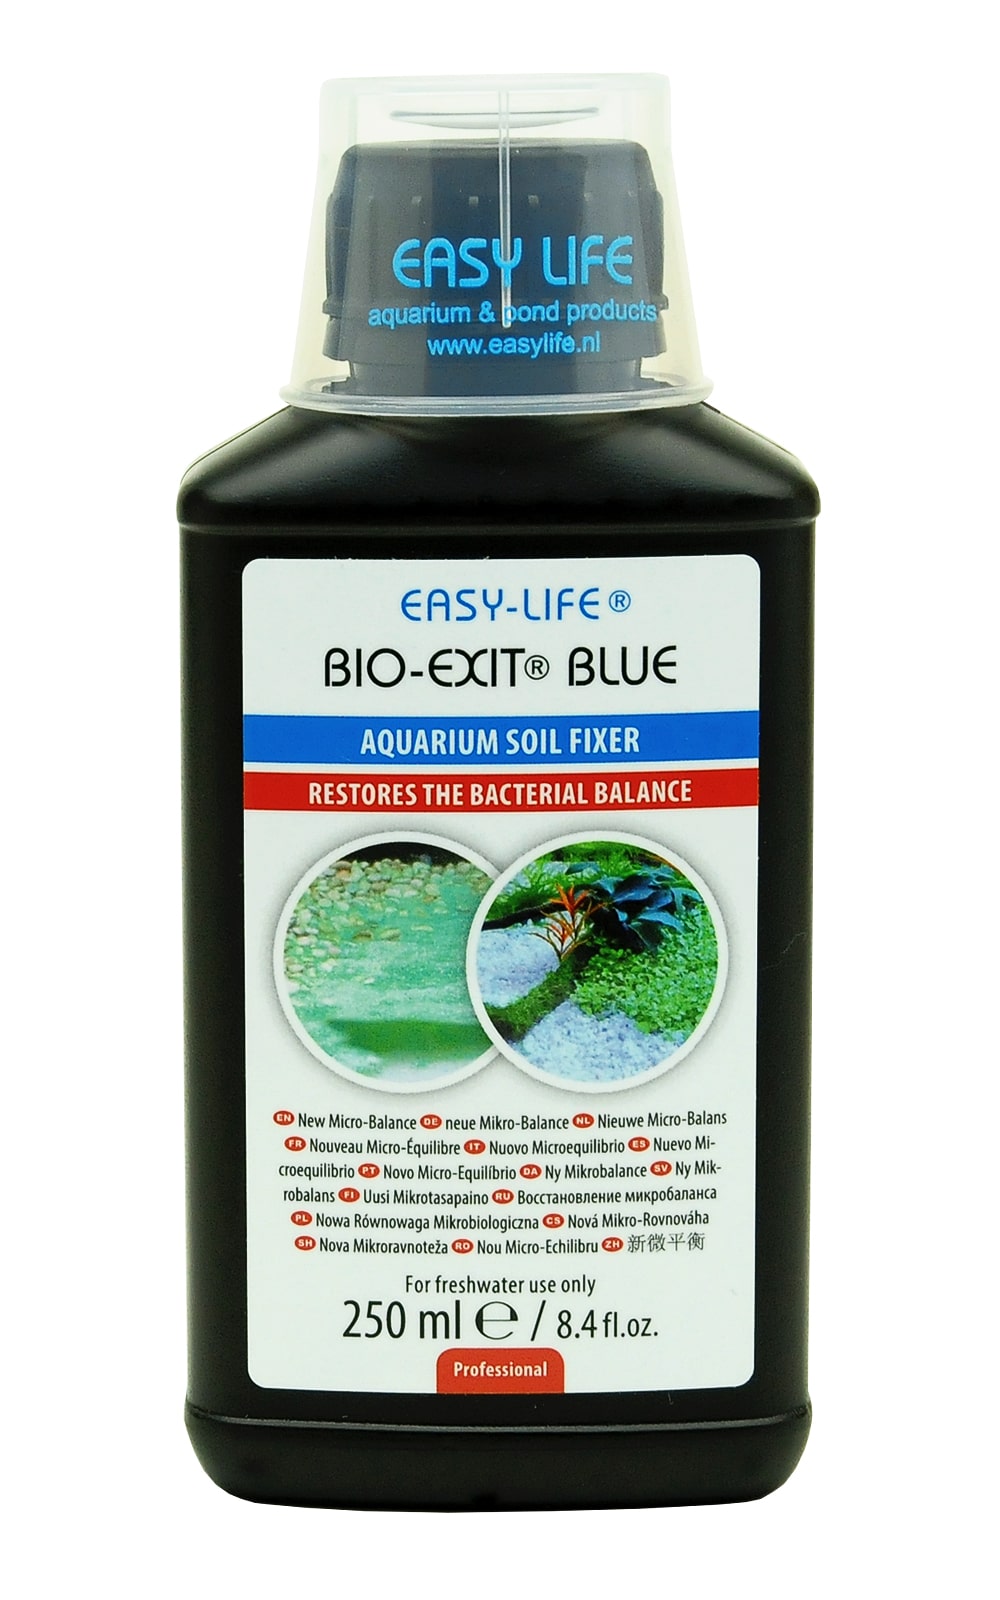 easy-life-bio-exit-blue-250-ml-reequilibre-les-bacteries-du-sol-pour-reduire-la-croissance-des-algues-bleues-et-de-cyanobacteries